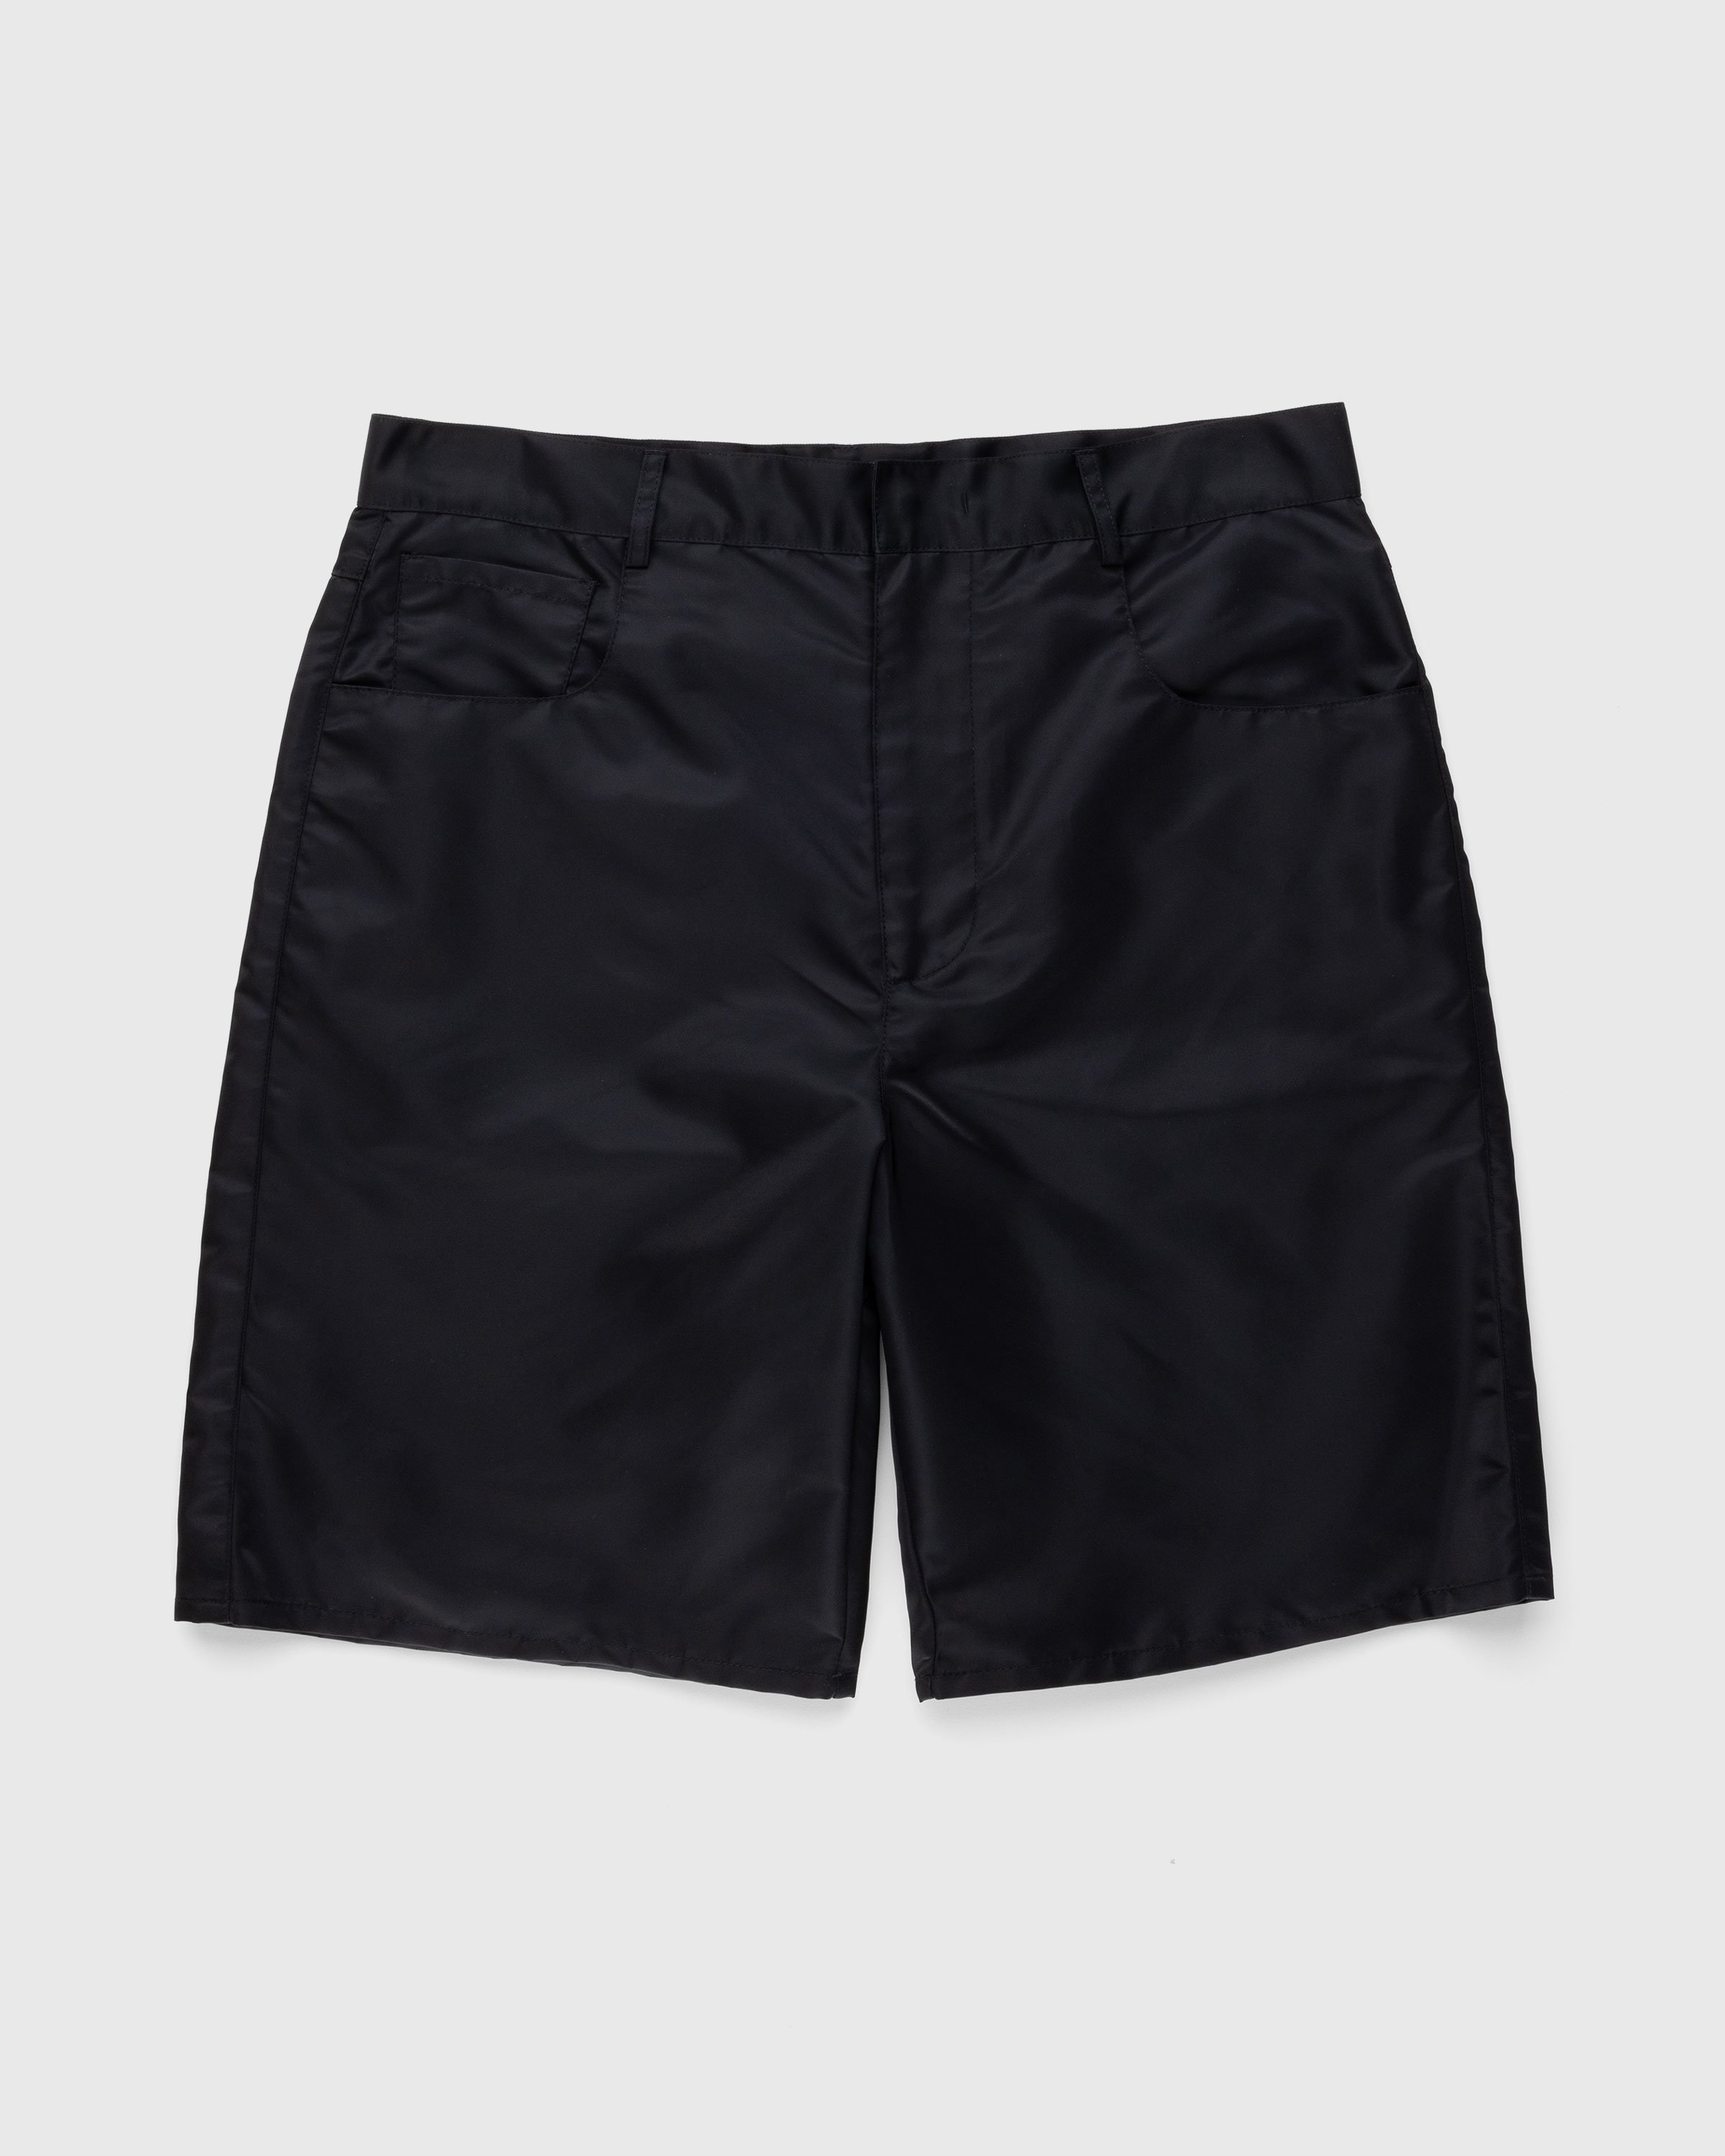 Trussardi - Nylon Shorts Black - Clothing - Black - Image 1